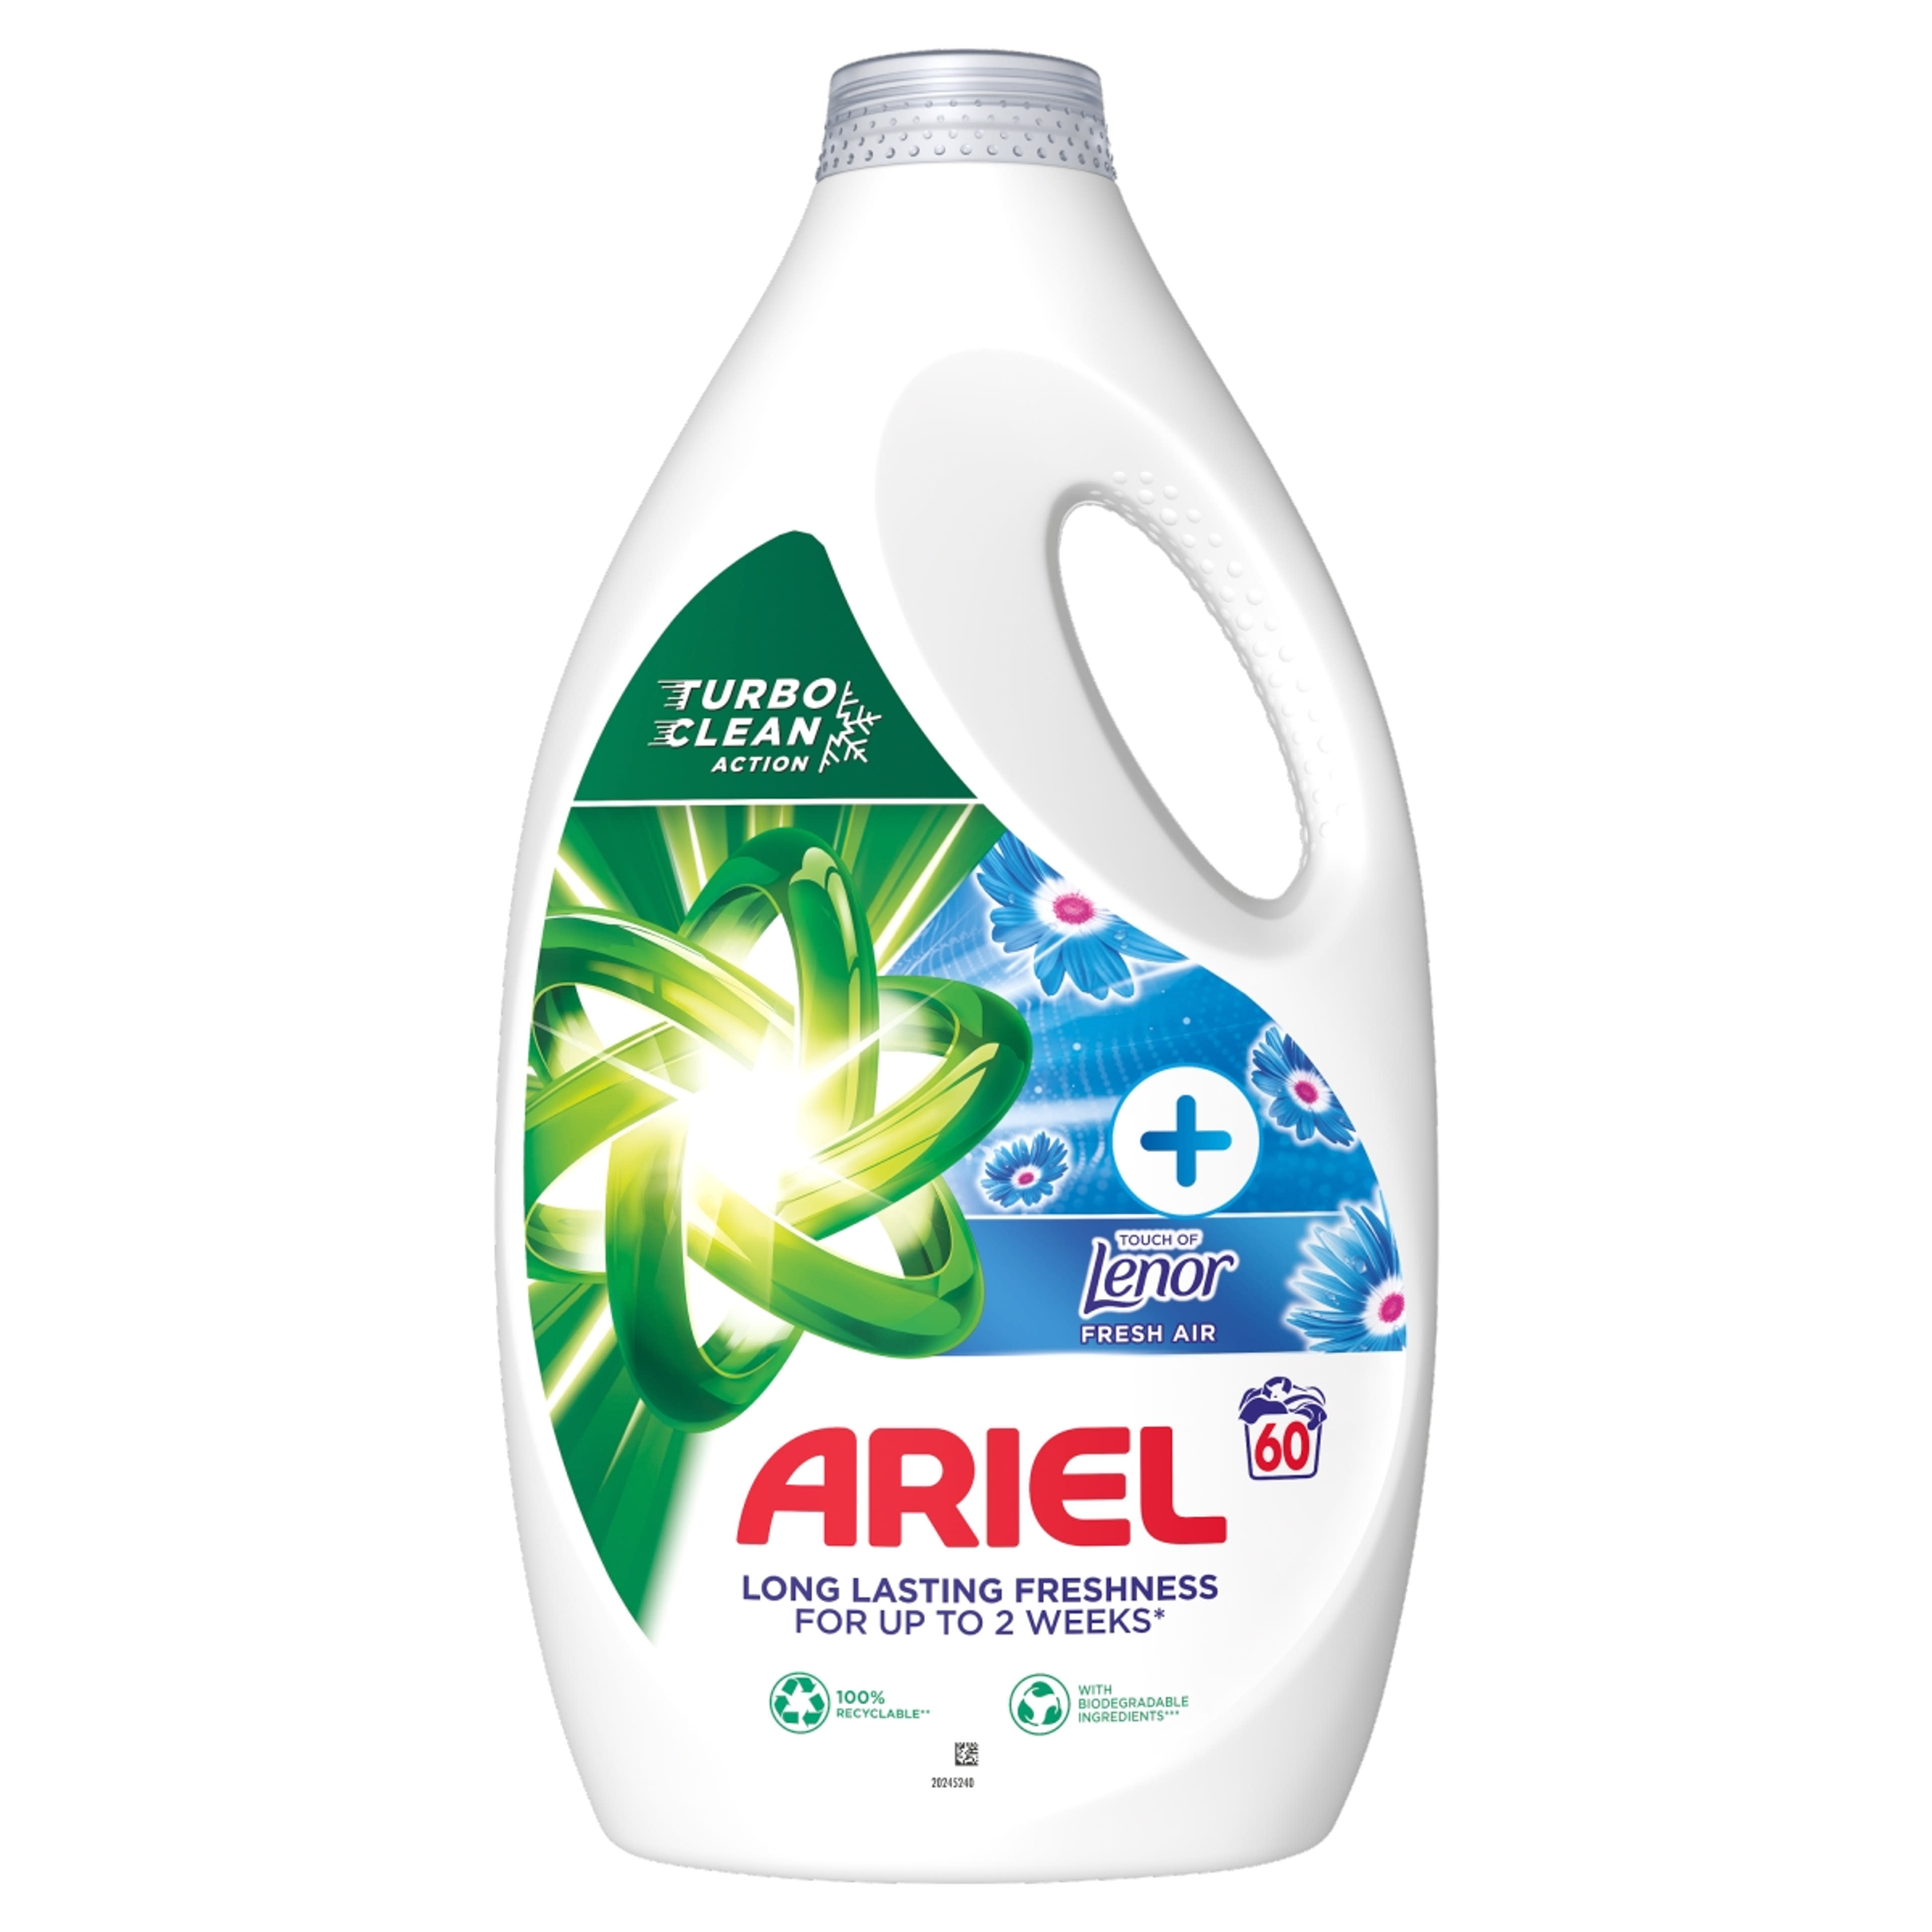 Ariel Fresh Air folyékony mosószer 60 mosáshoz - 3000 ml-1